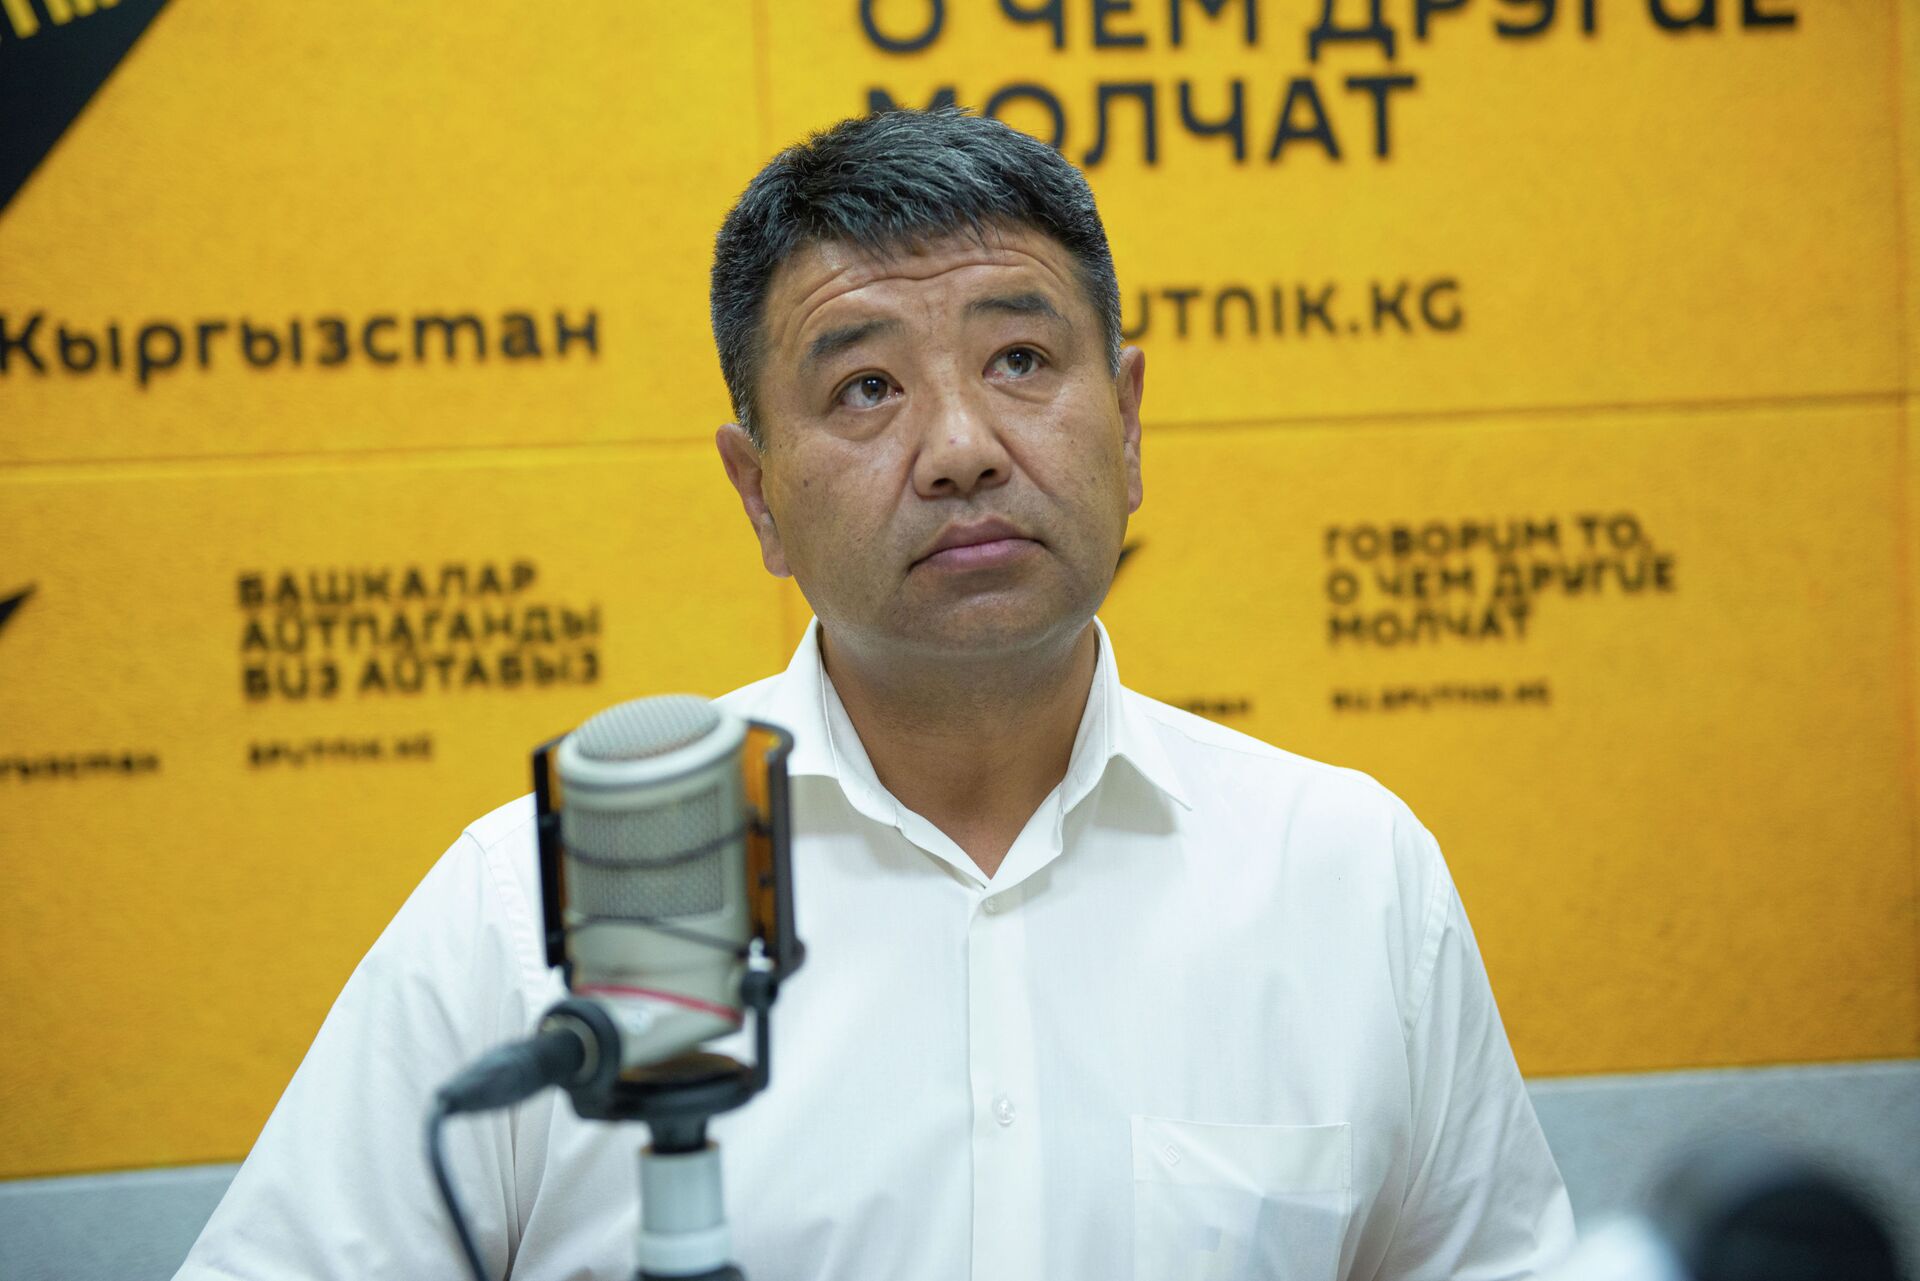 Что происходит на кыргызской таможне — первое интервью главы ГТС - Sputnik Кыргызстан, 1920, 27.09.2021